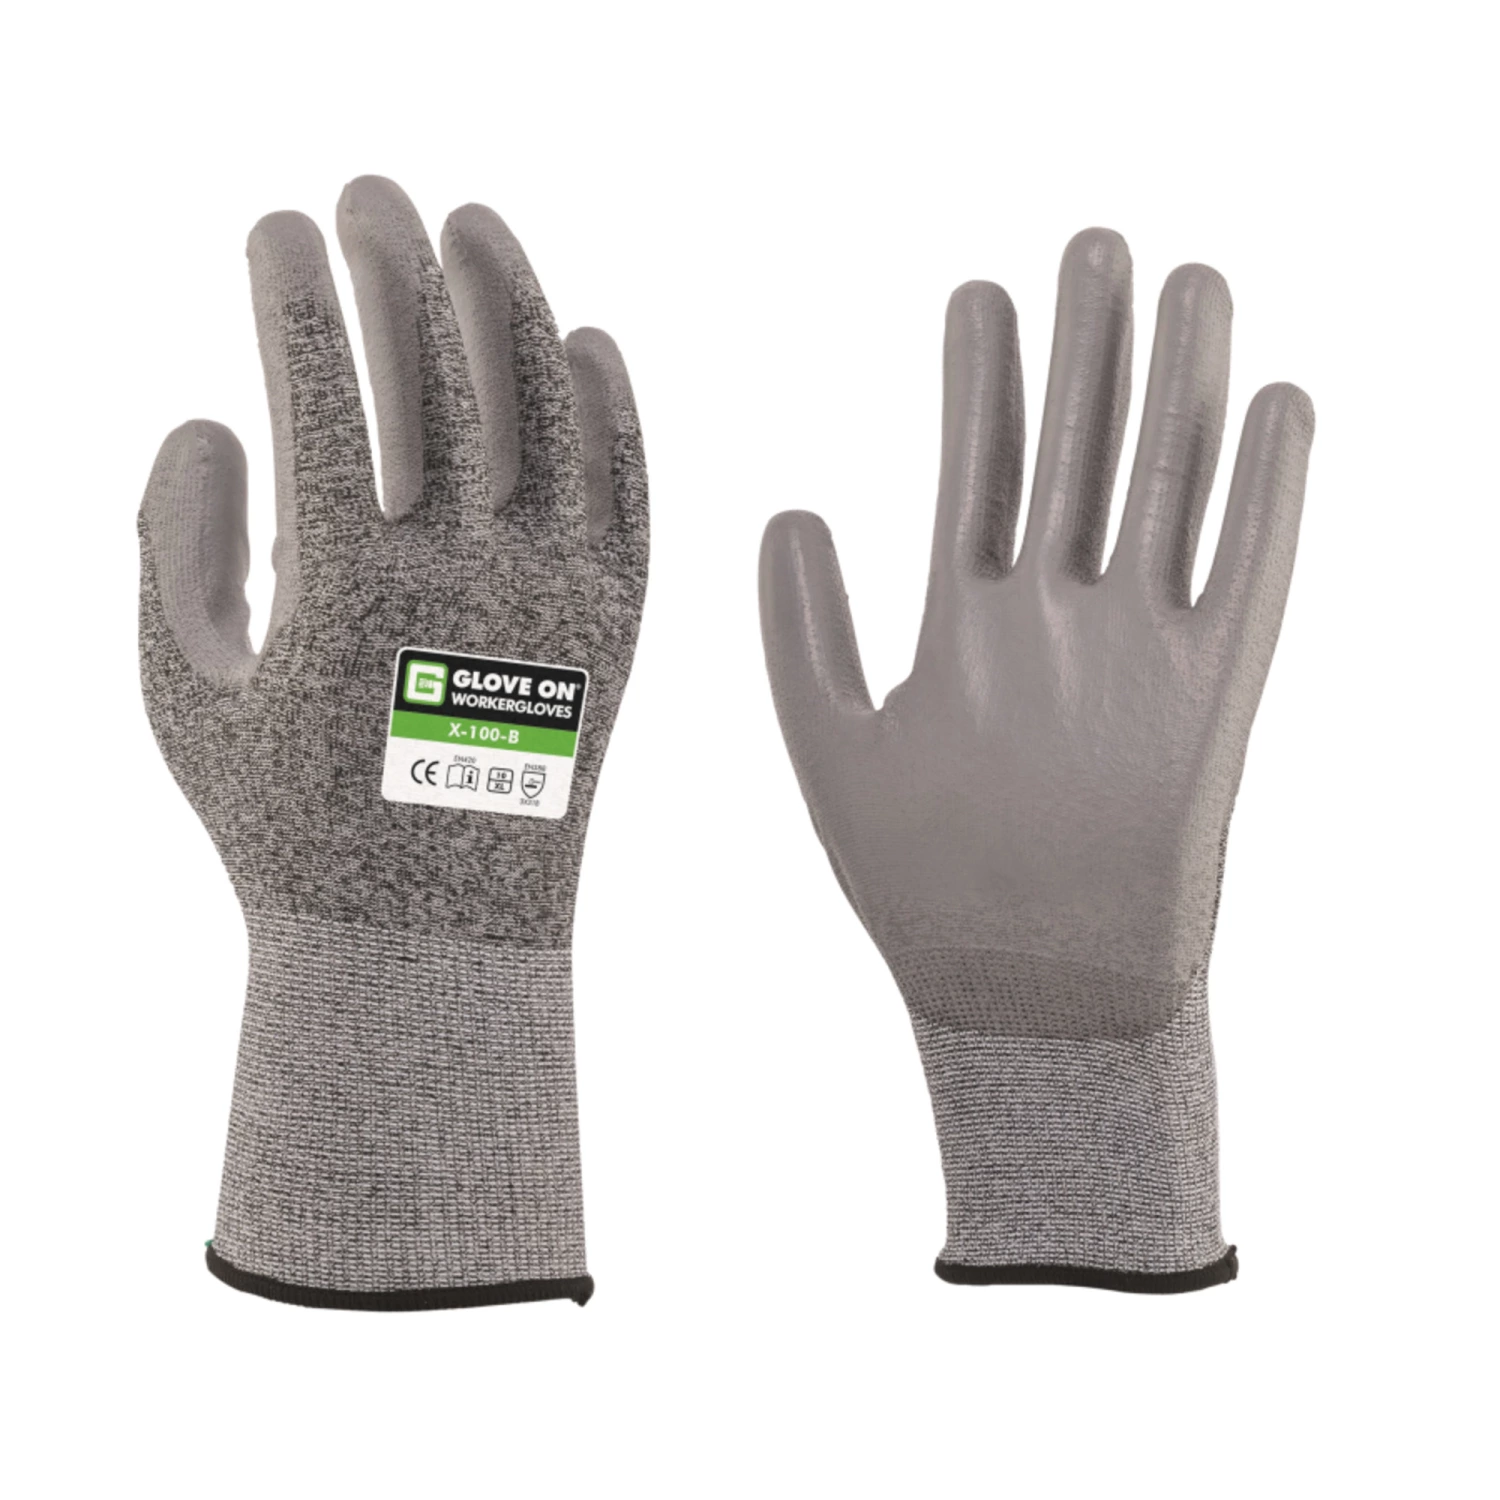 Glove On Protect X 100 B werkhandschoen - maat 8-image